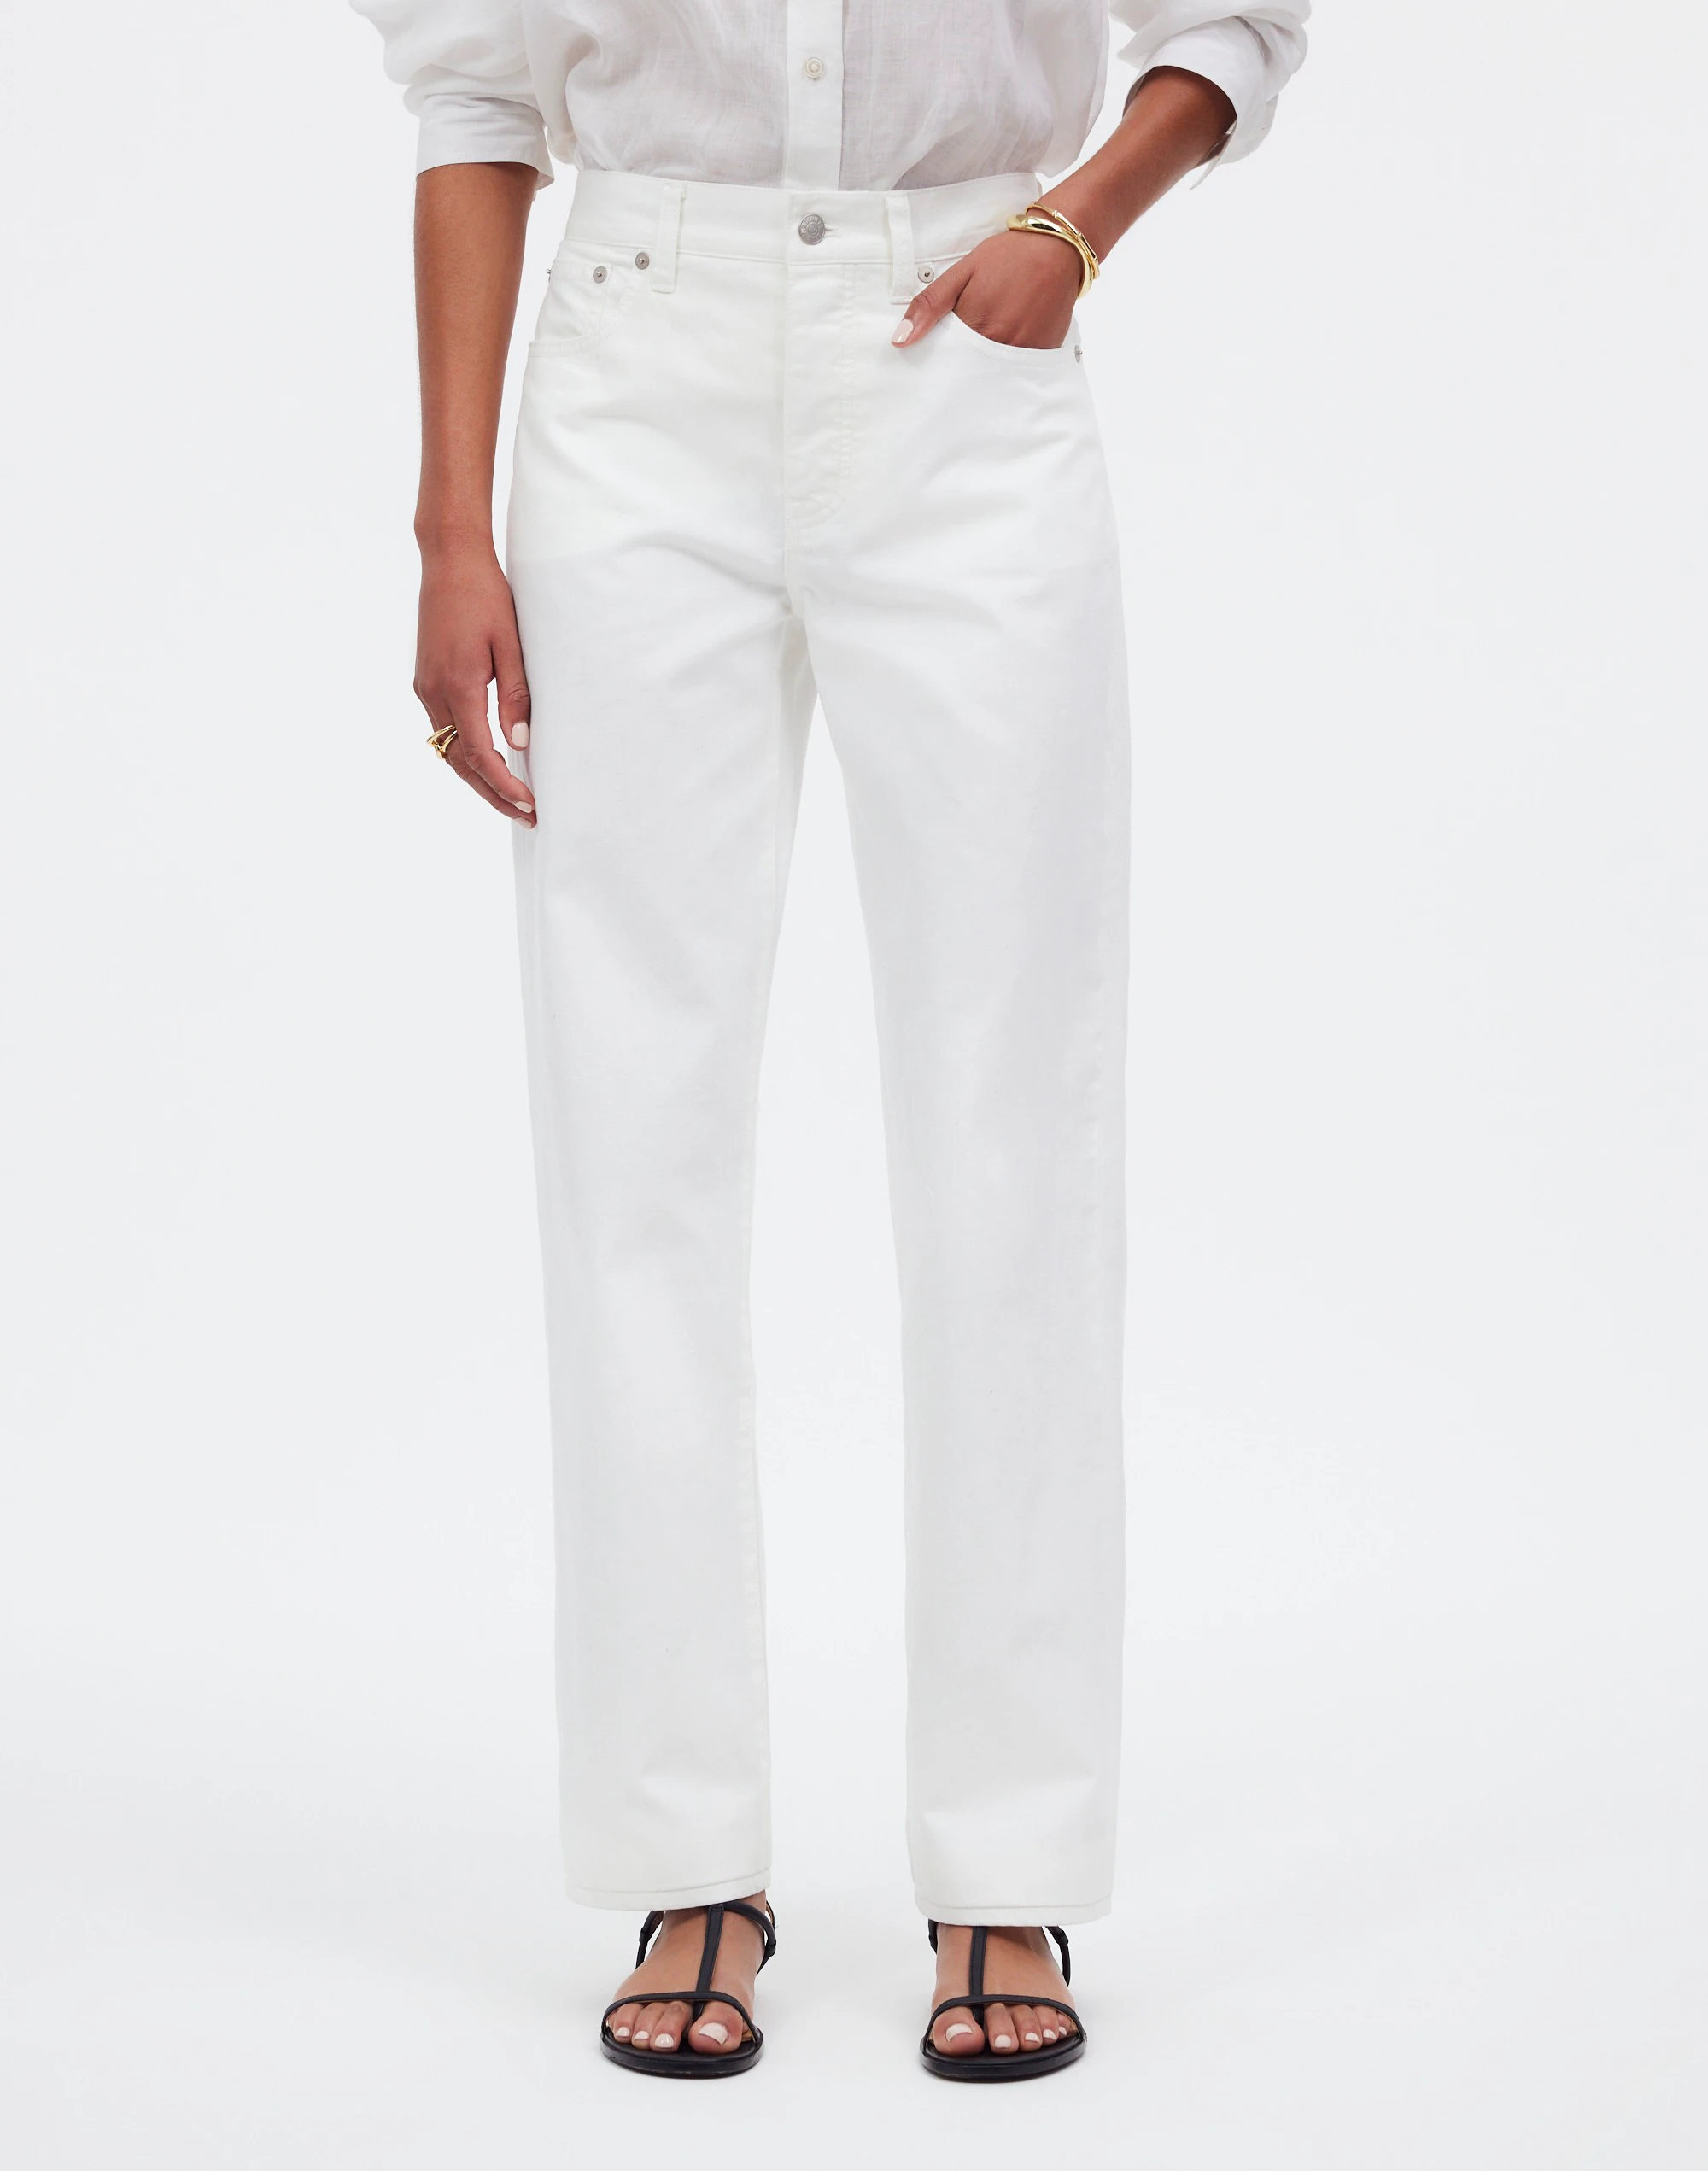 Jeansy z niskim stanem i prostymi nogawkami w kolorze białym